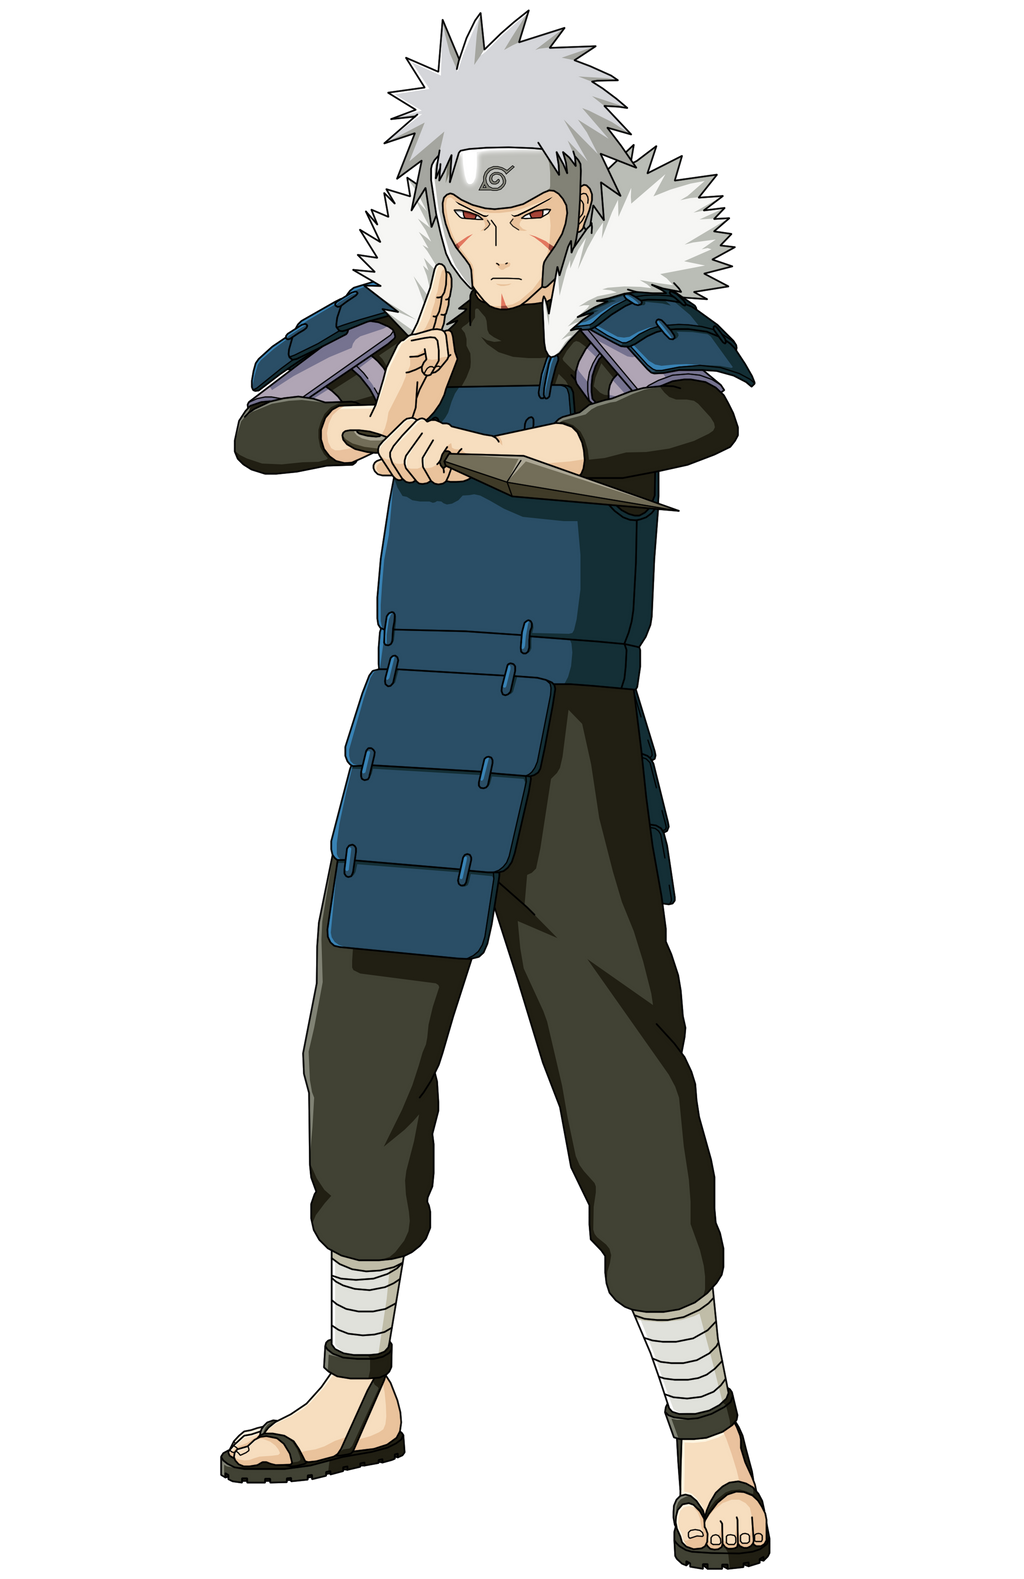 Tobirama Senju: história e poderes do segundo Hokage de Naruto